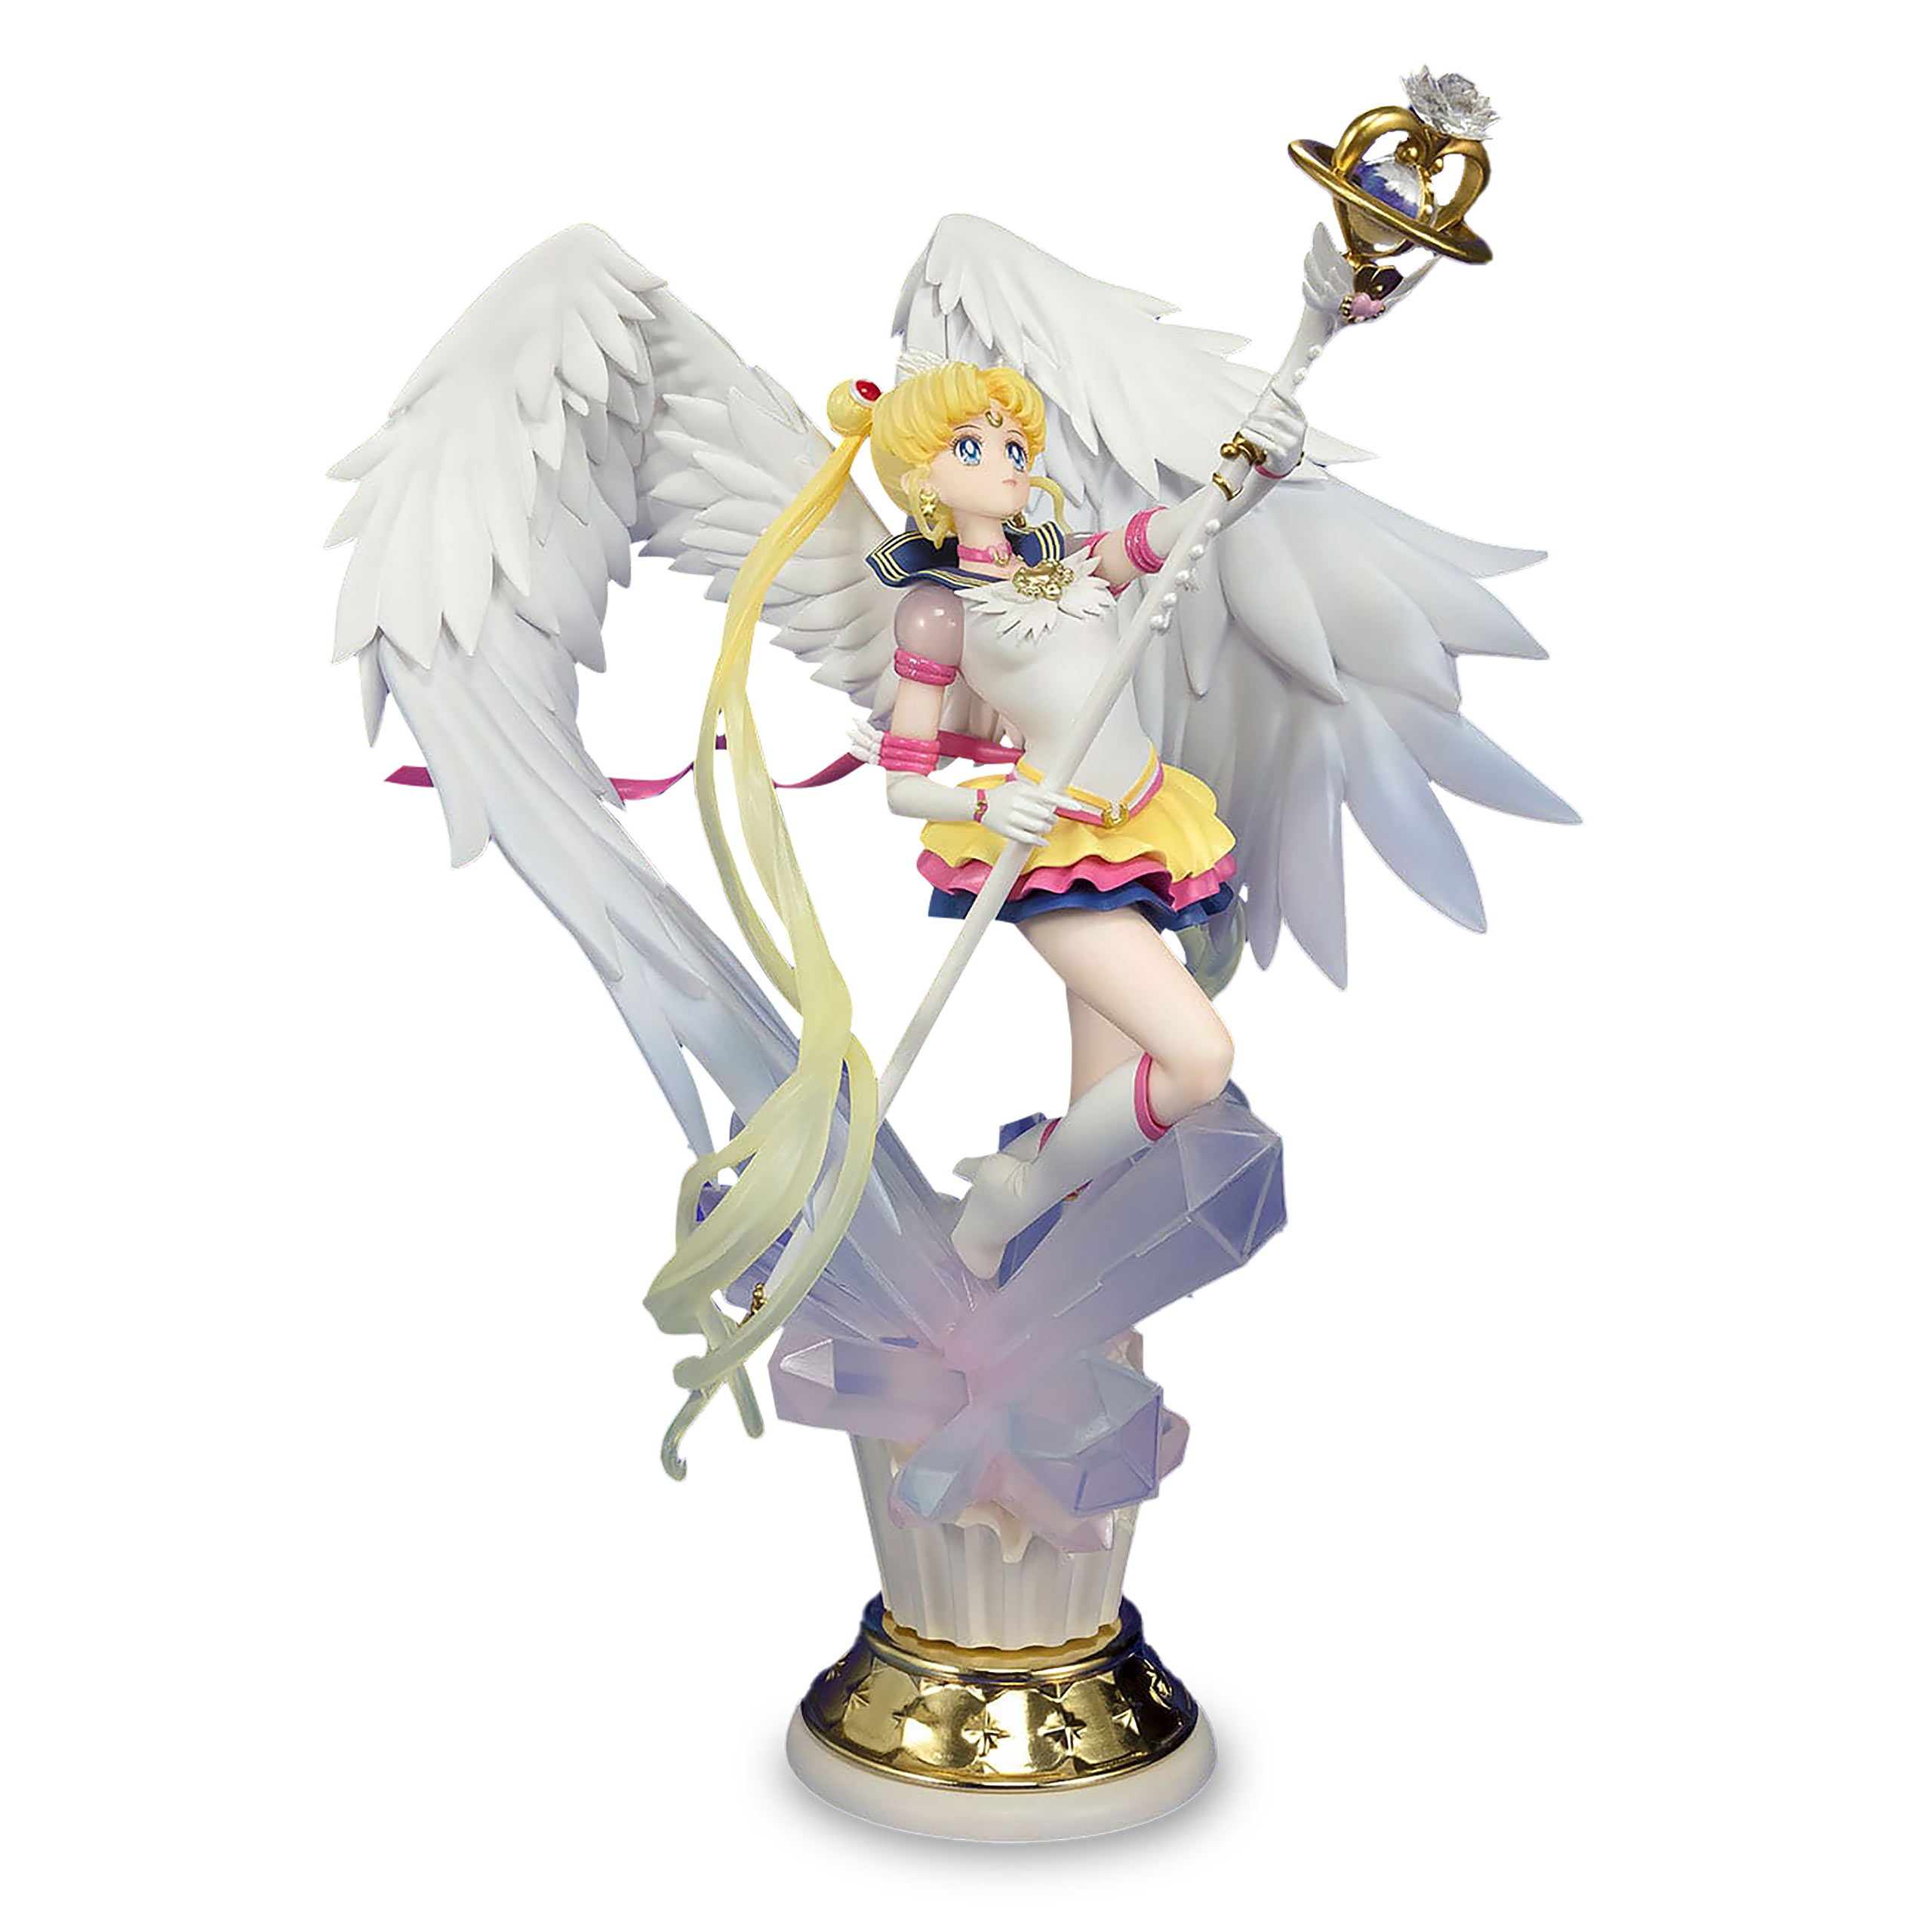 Sailor Moon Eternal - Darkness and Light Statue